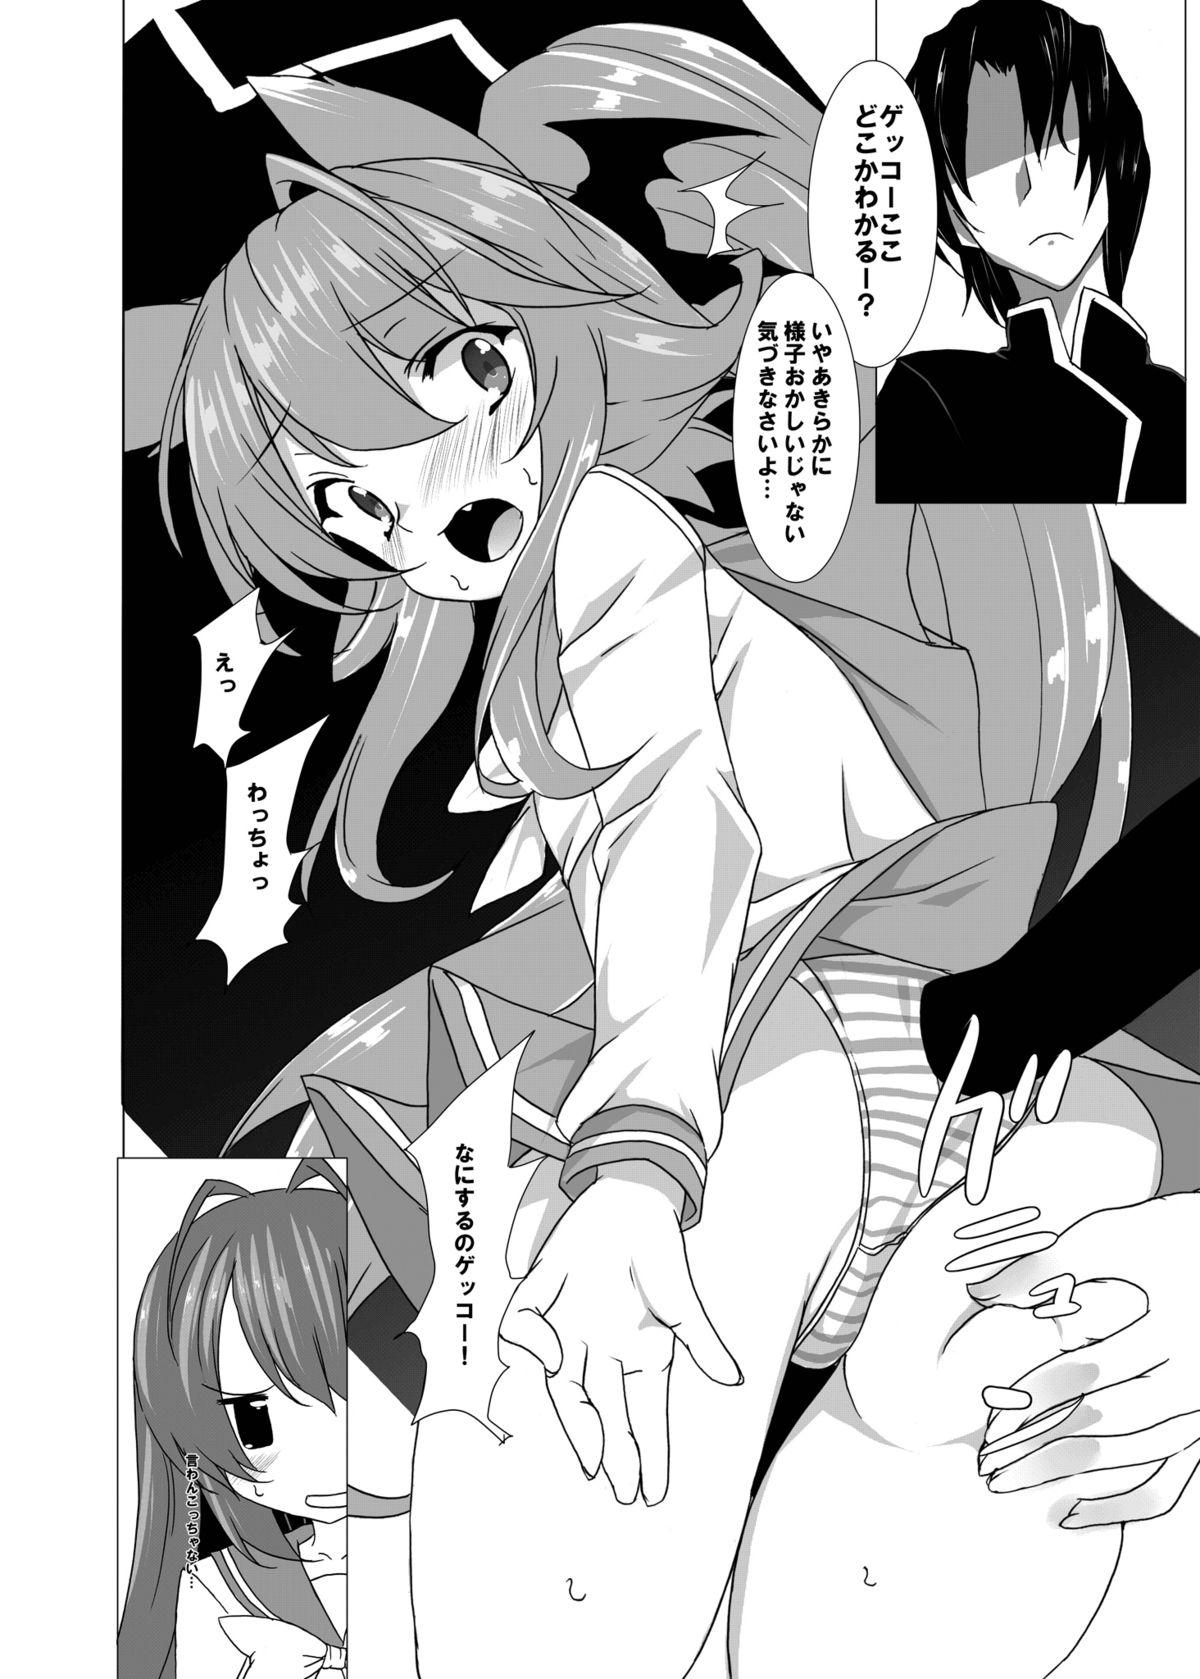 Hot Milf Yumeiro Communication - Itsuka tenma no kuro usagi Street - Page 3